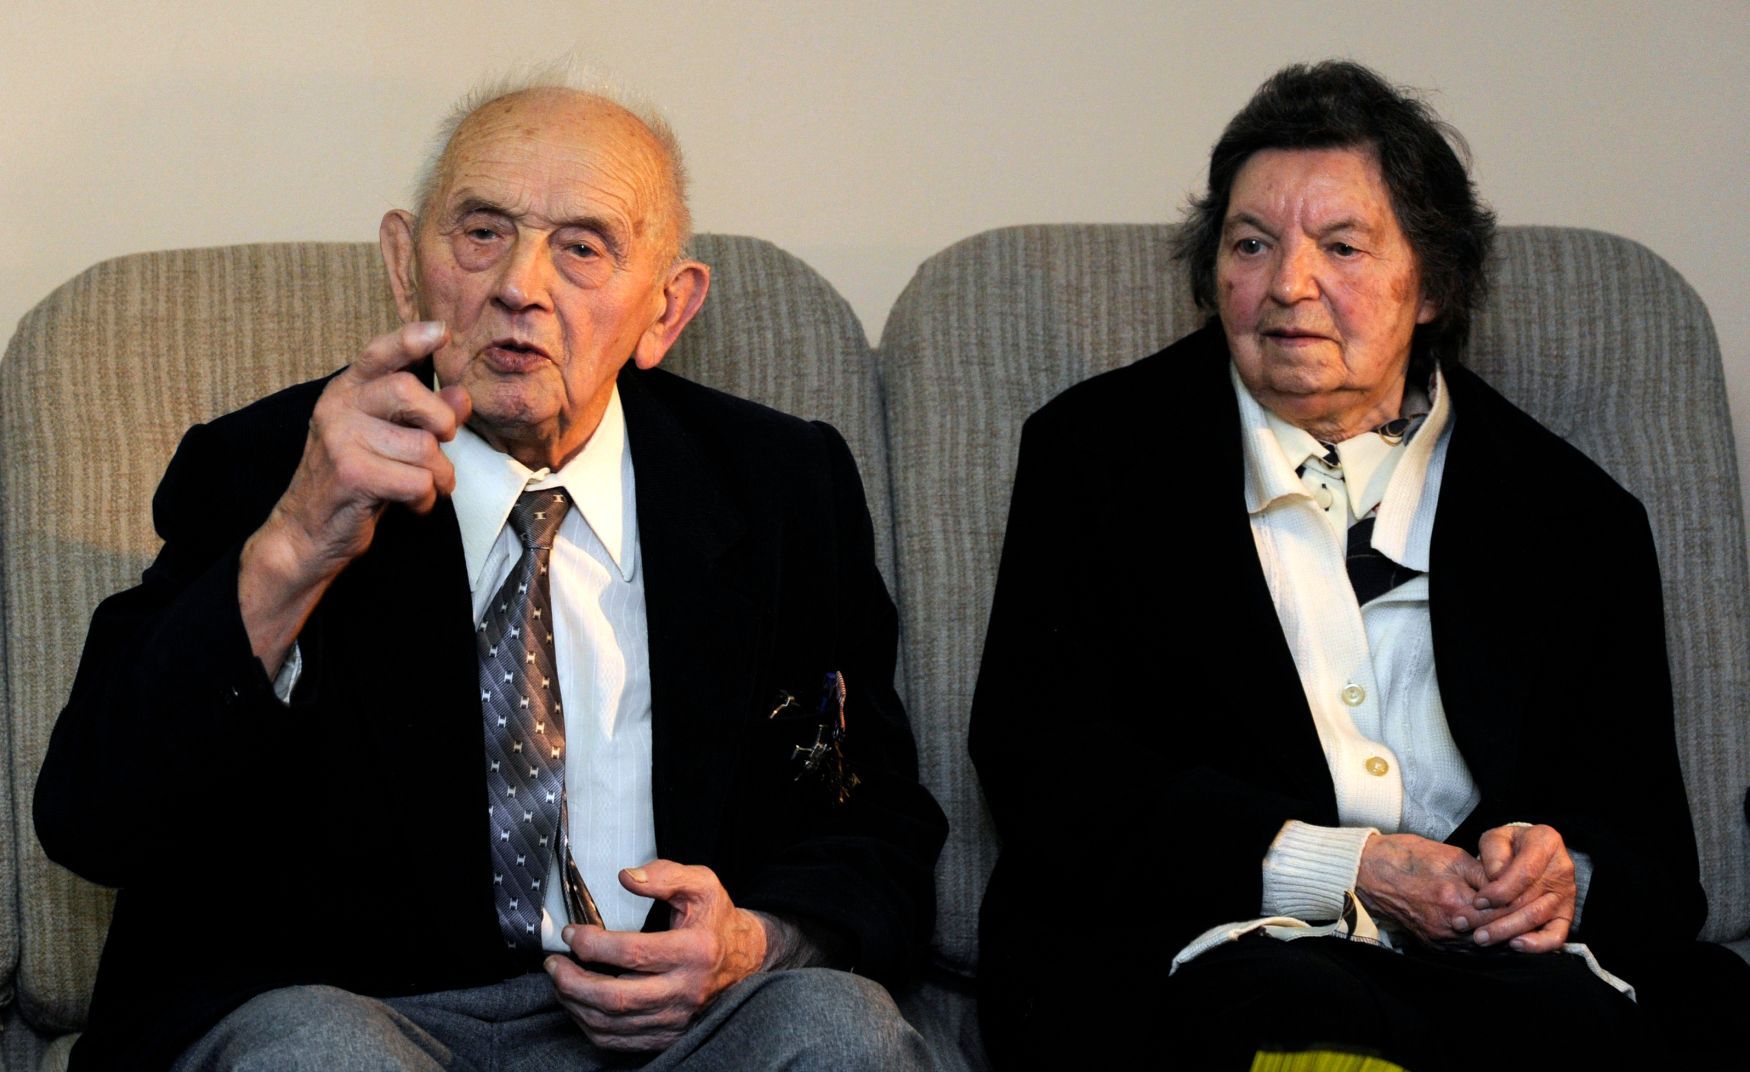 Kazatel Jan Jelínek s manželkou Annou za druhé světové války na Volyni poskytli azyl Ukrajincům, Polákům i židovským uprchlíkům. Foto z roku 2008.